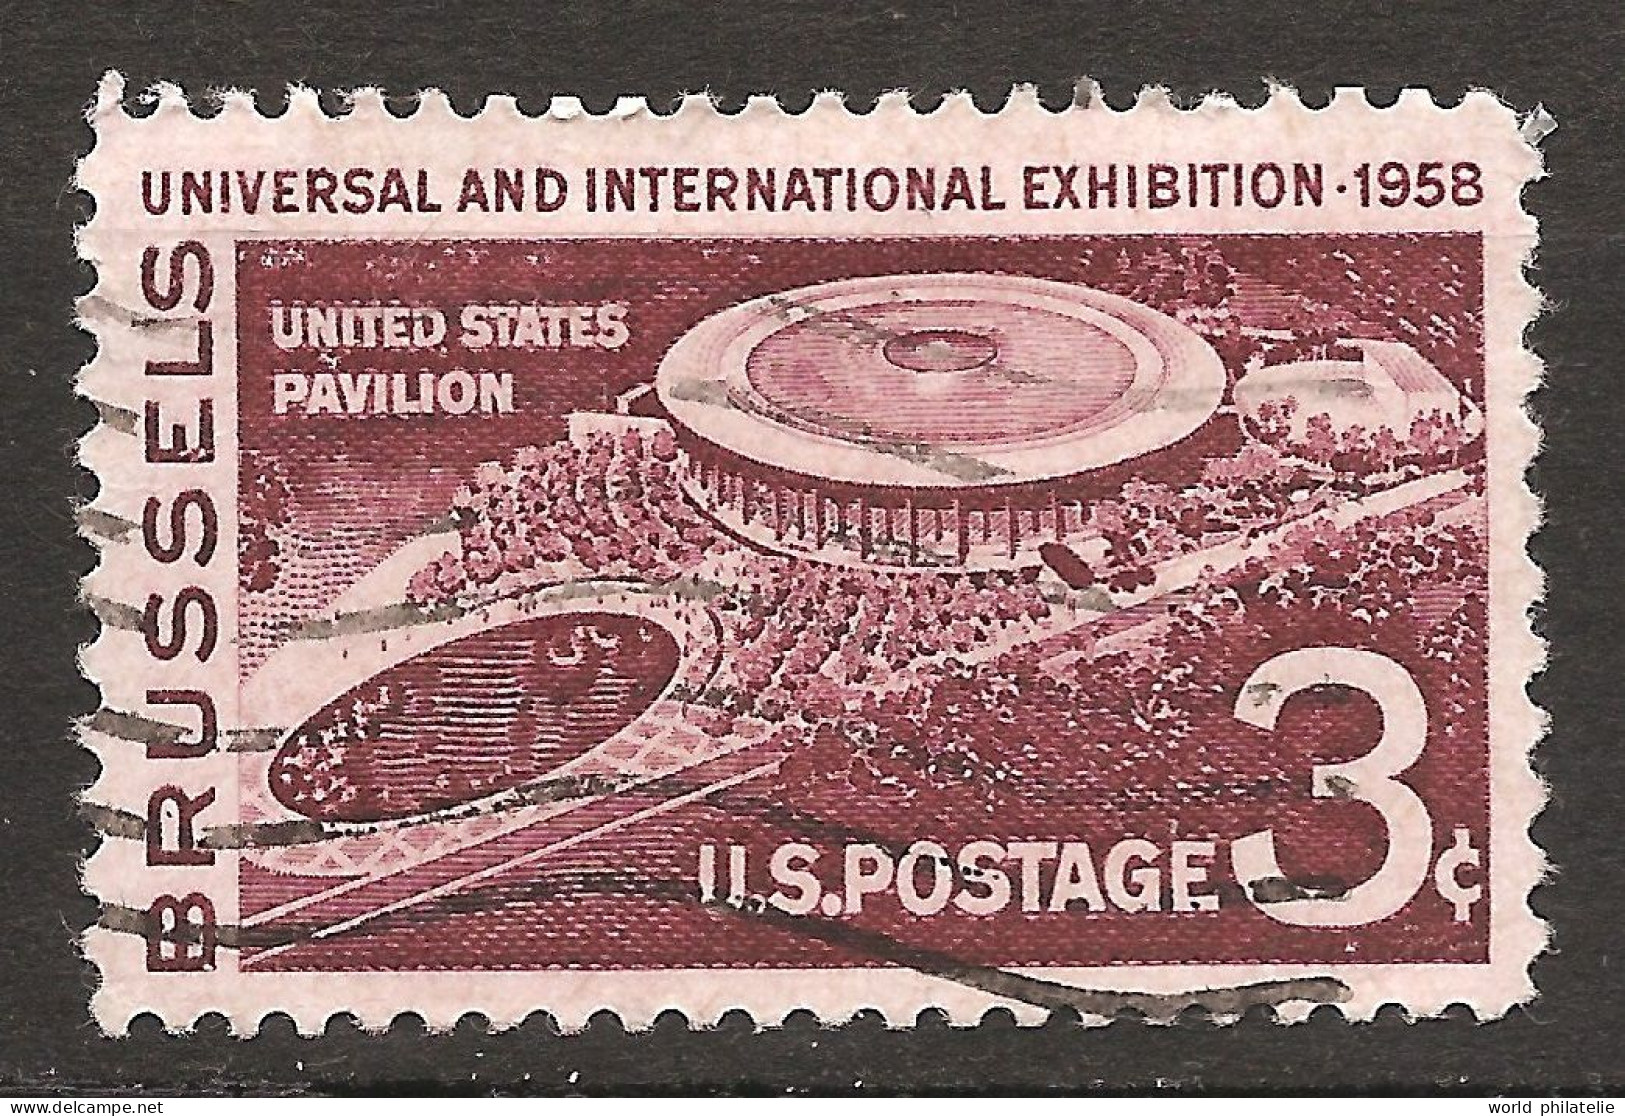 Etats-Unis D'Amérique USA 1958 N° 638 O Exposition Universelle, Bruxelles, Pavillon, Heysel, Orchestre, Disney, Cinéma - Usados